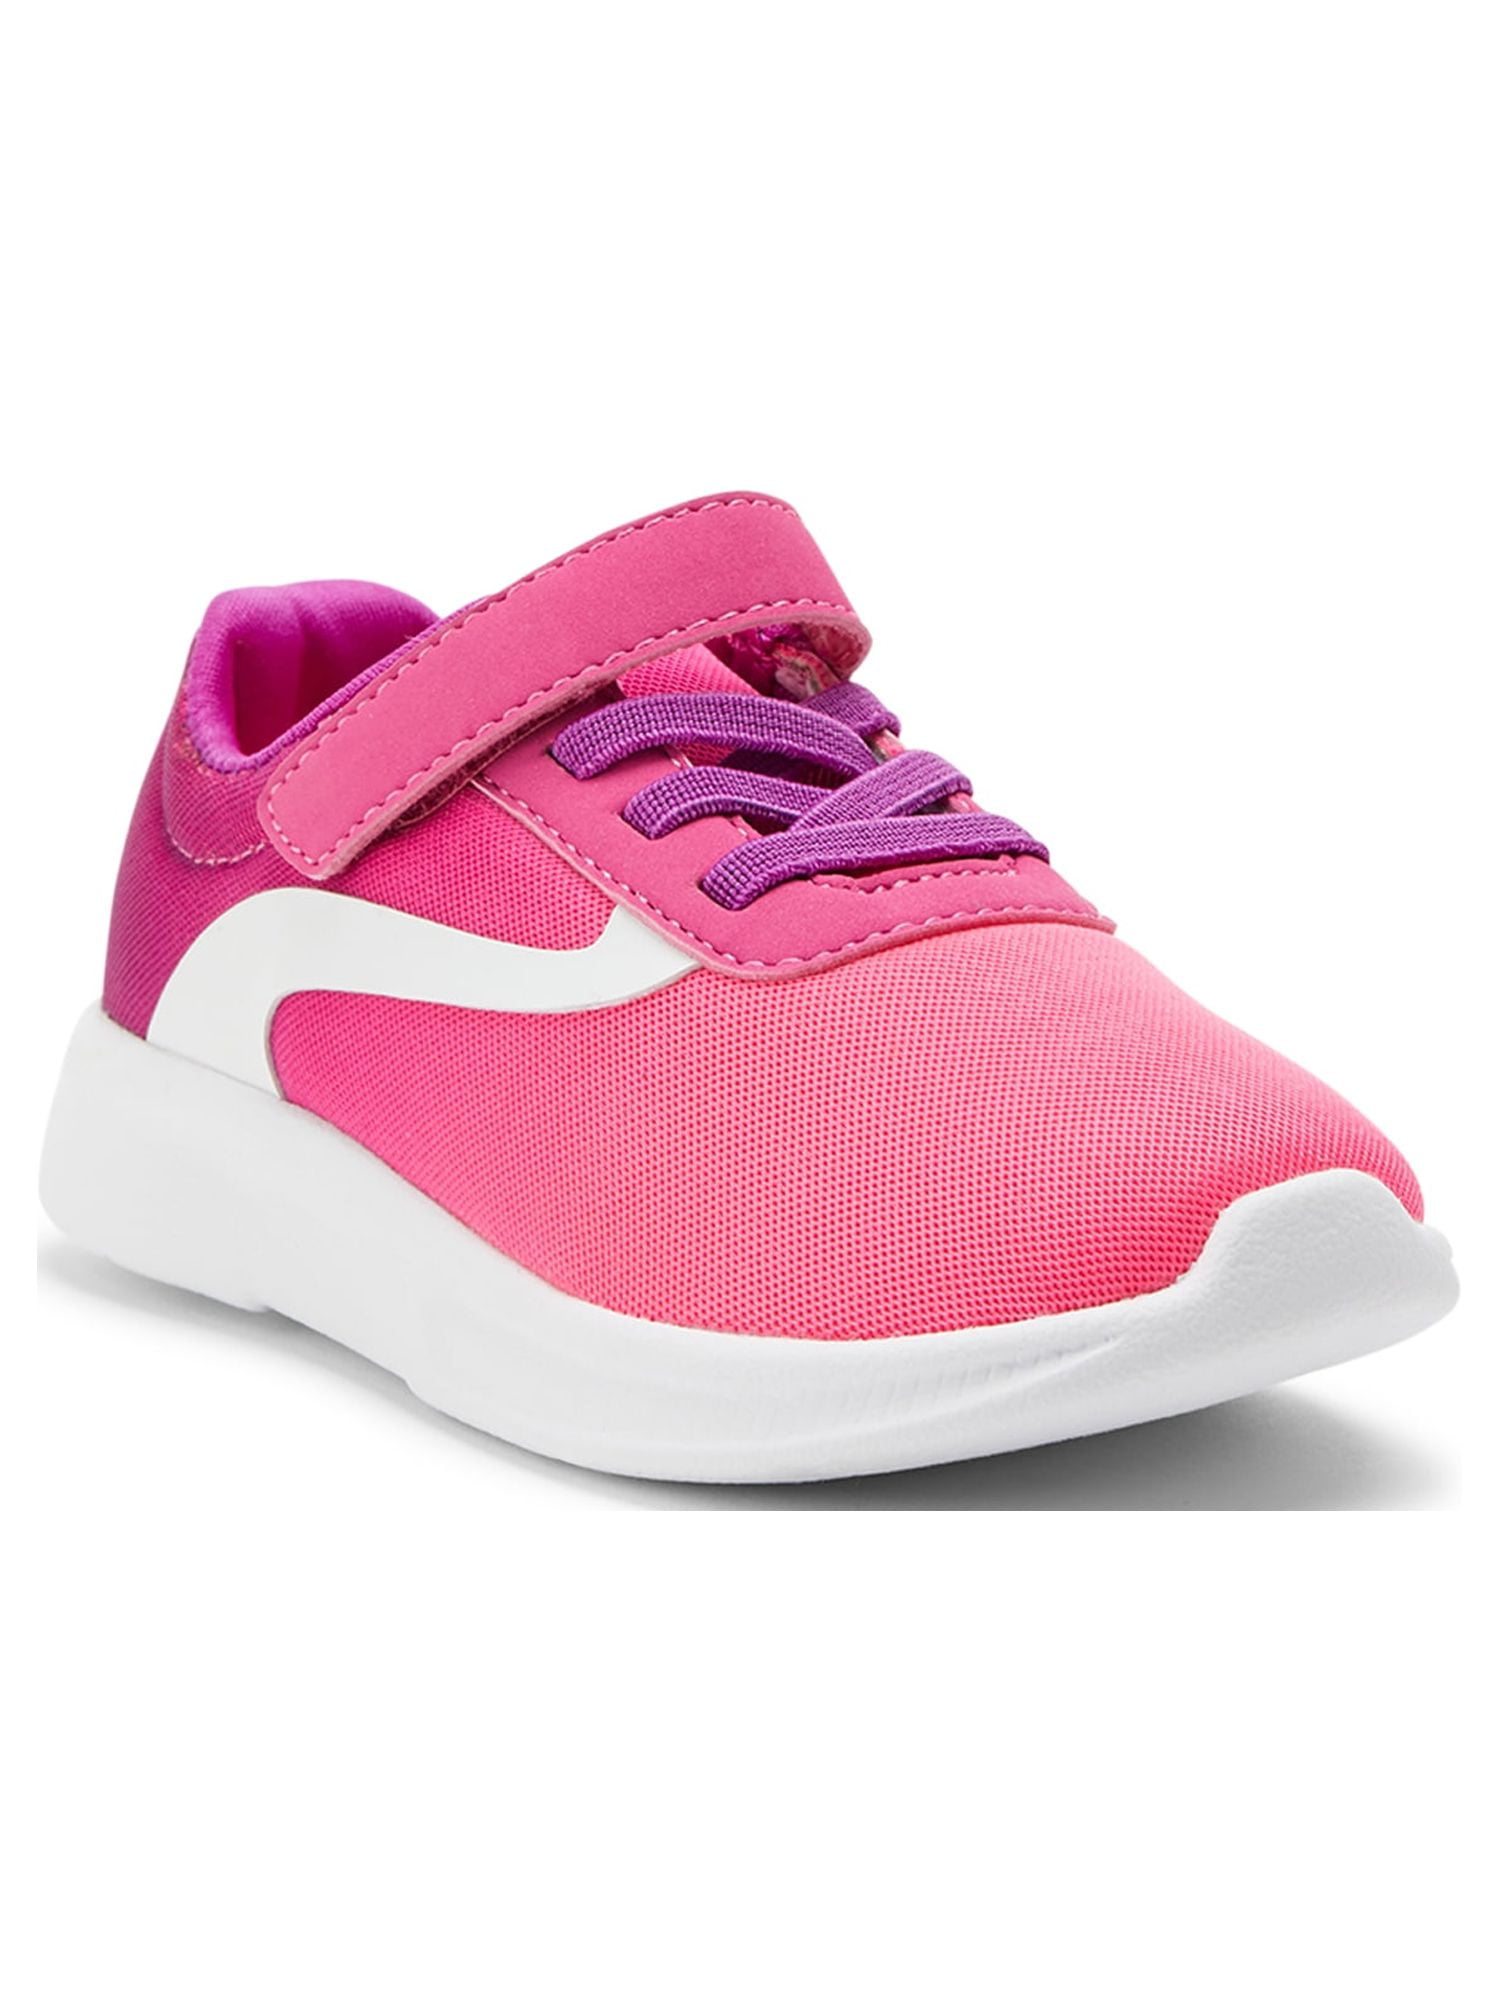 Steve Madden Girls' T-Maples Sneakers (Toddler) | Dillard's